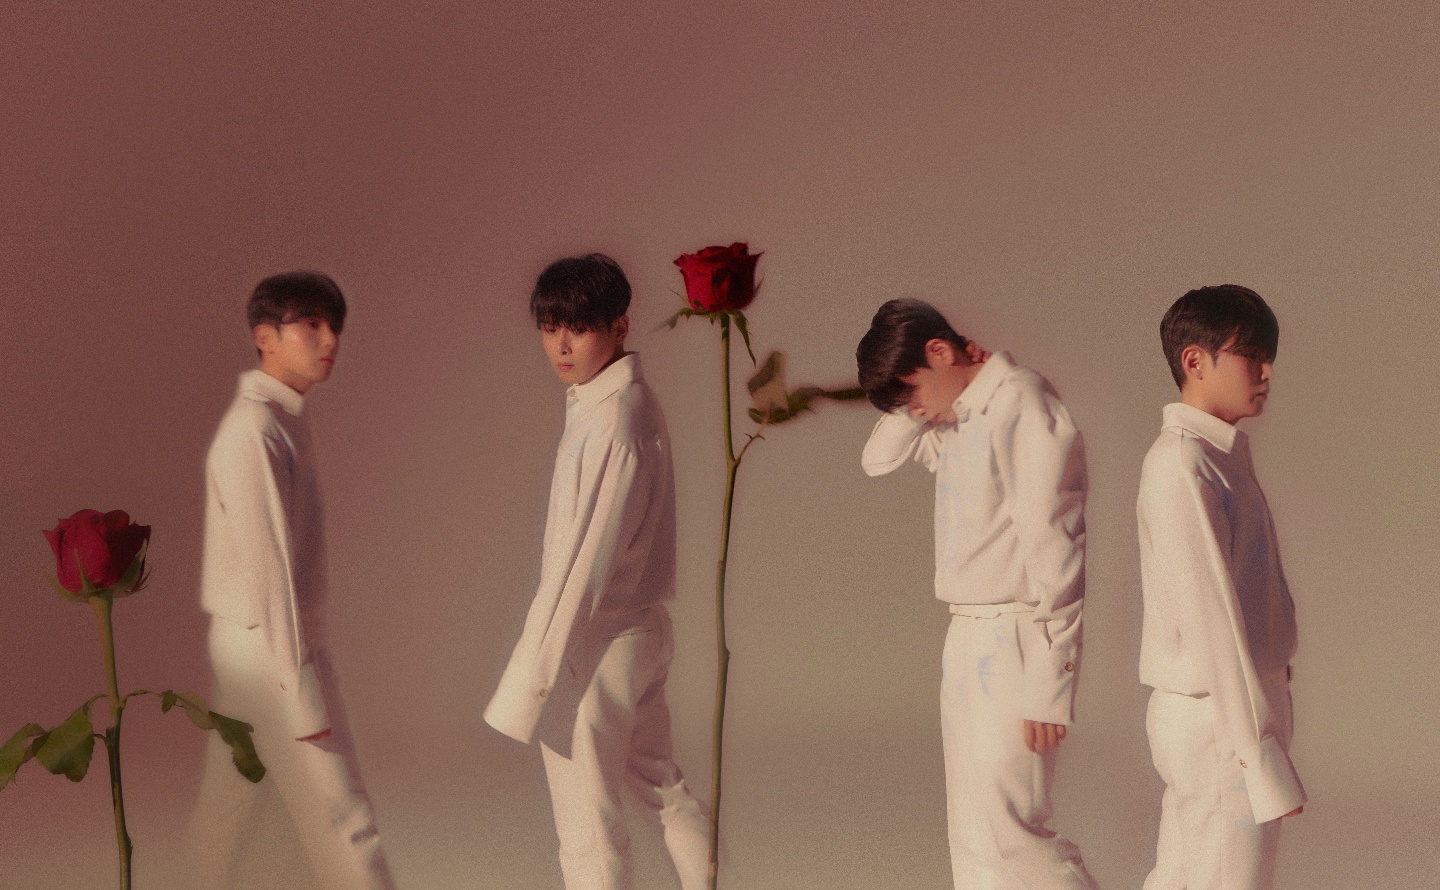 슈퍼주니어 려욱 RYEOWOOK The 3rd Mini Album [A Wild Rose] Image Teaser - 꽃잎 & 가시